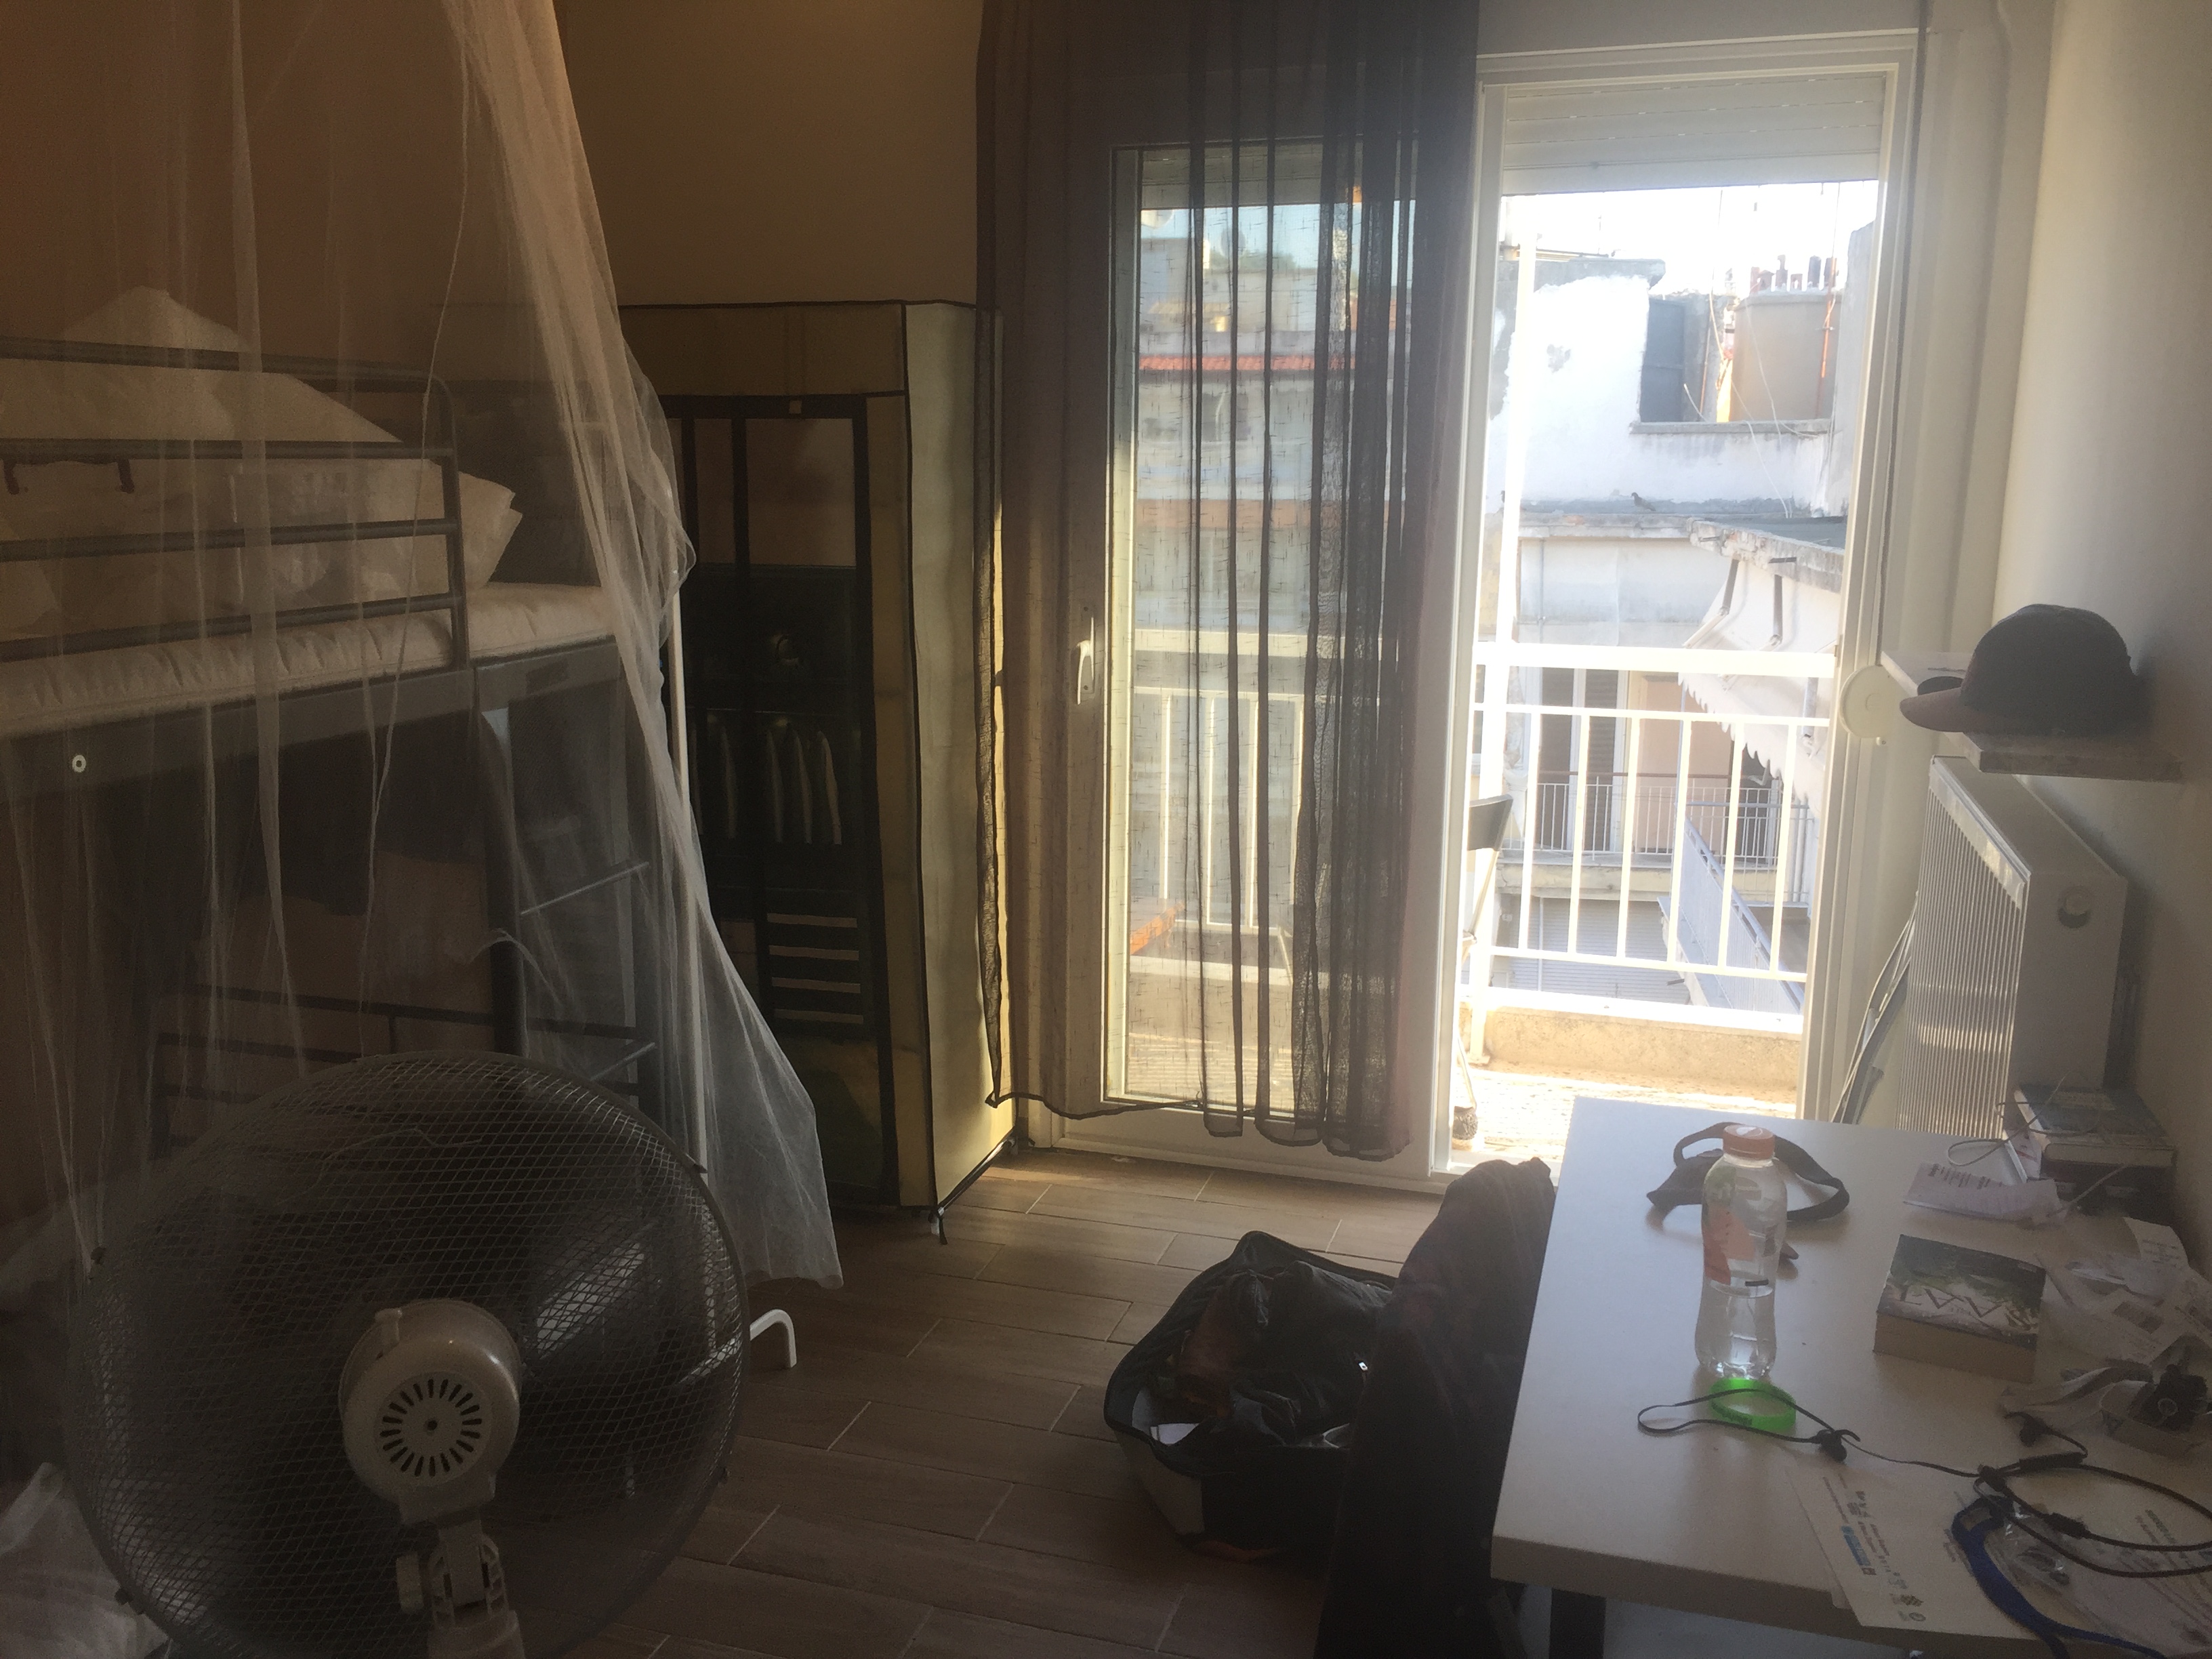 Mein Zimmer in Serres mit Zutritt zum Balkon und Hochbett sowie einem kleinen Schreibtisch.